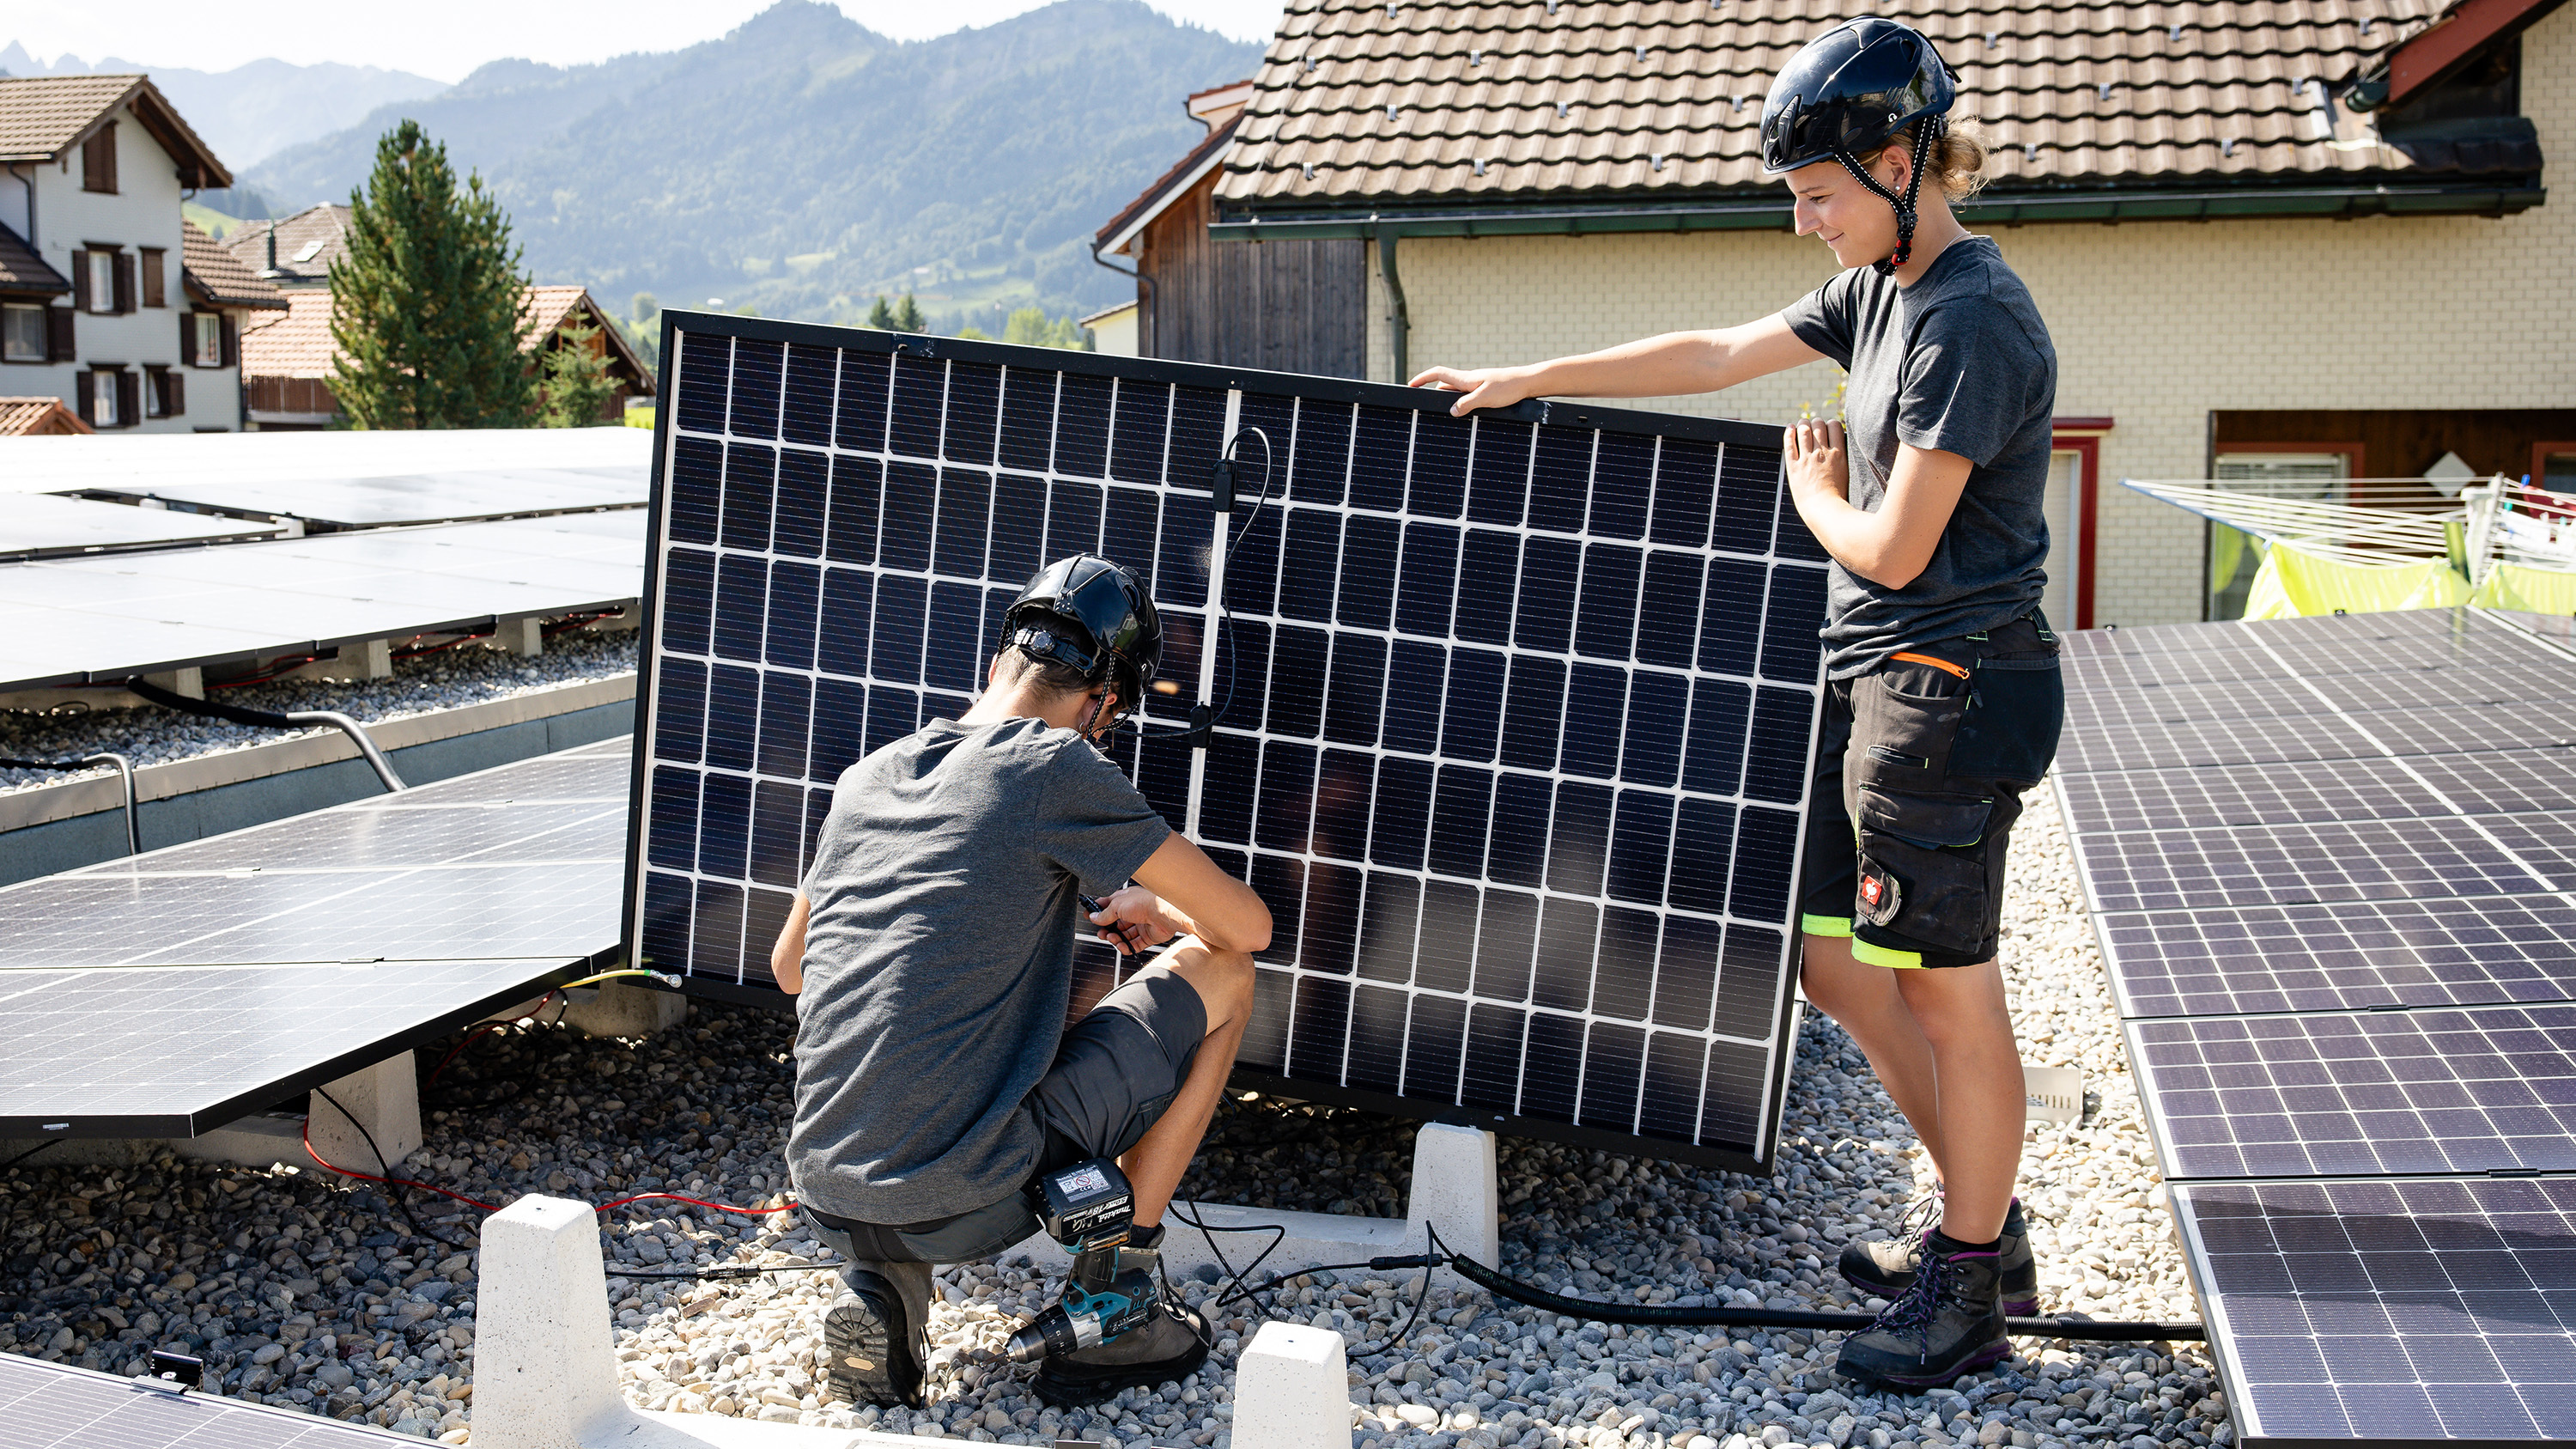 Deux apprentis travaillent sur des panneaux solaires en tenue de travail et avec un casque sur un toit plat.